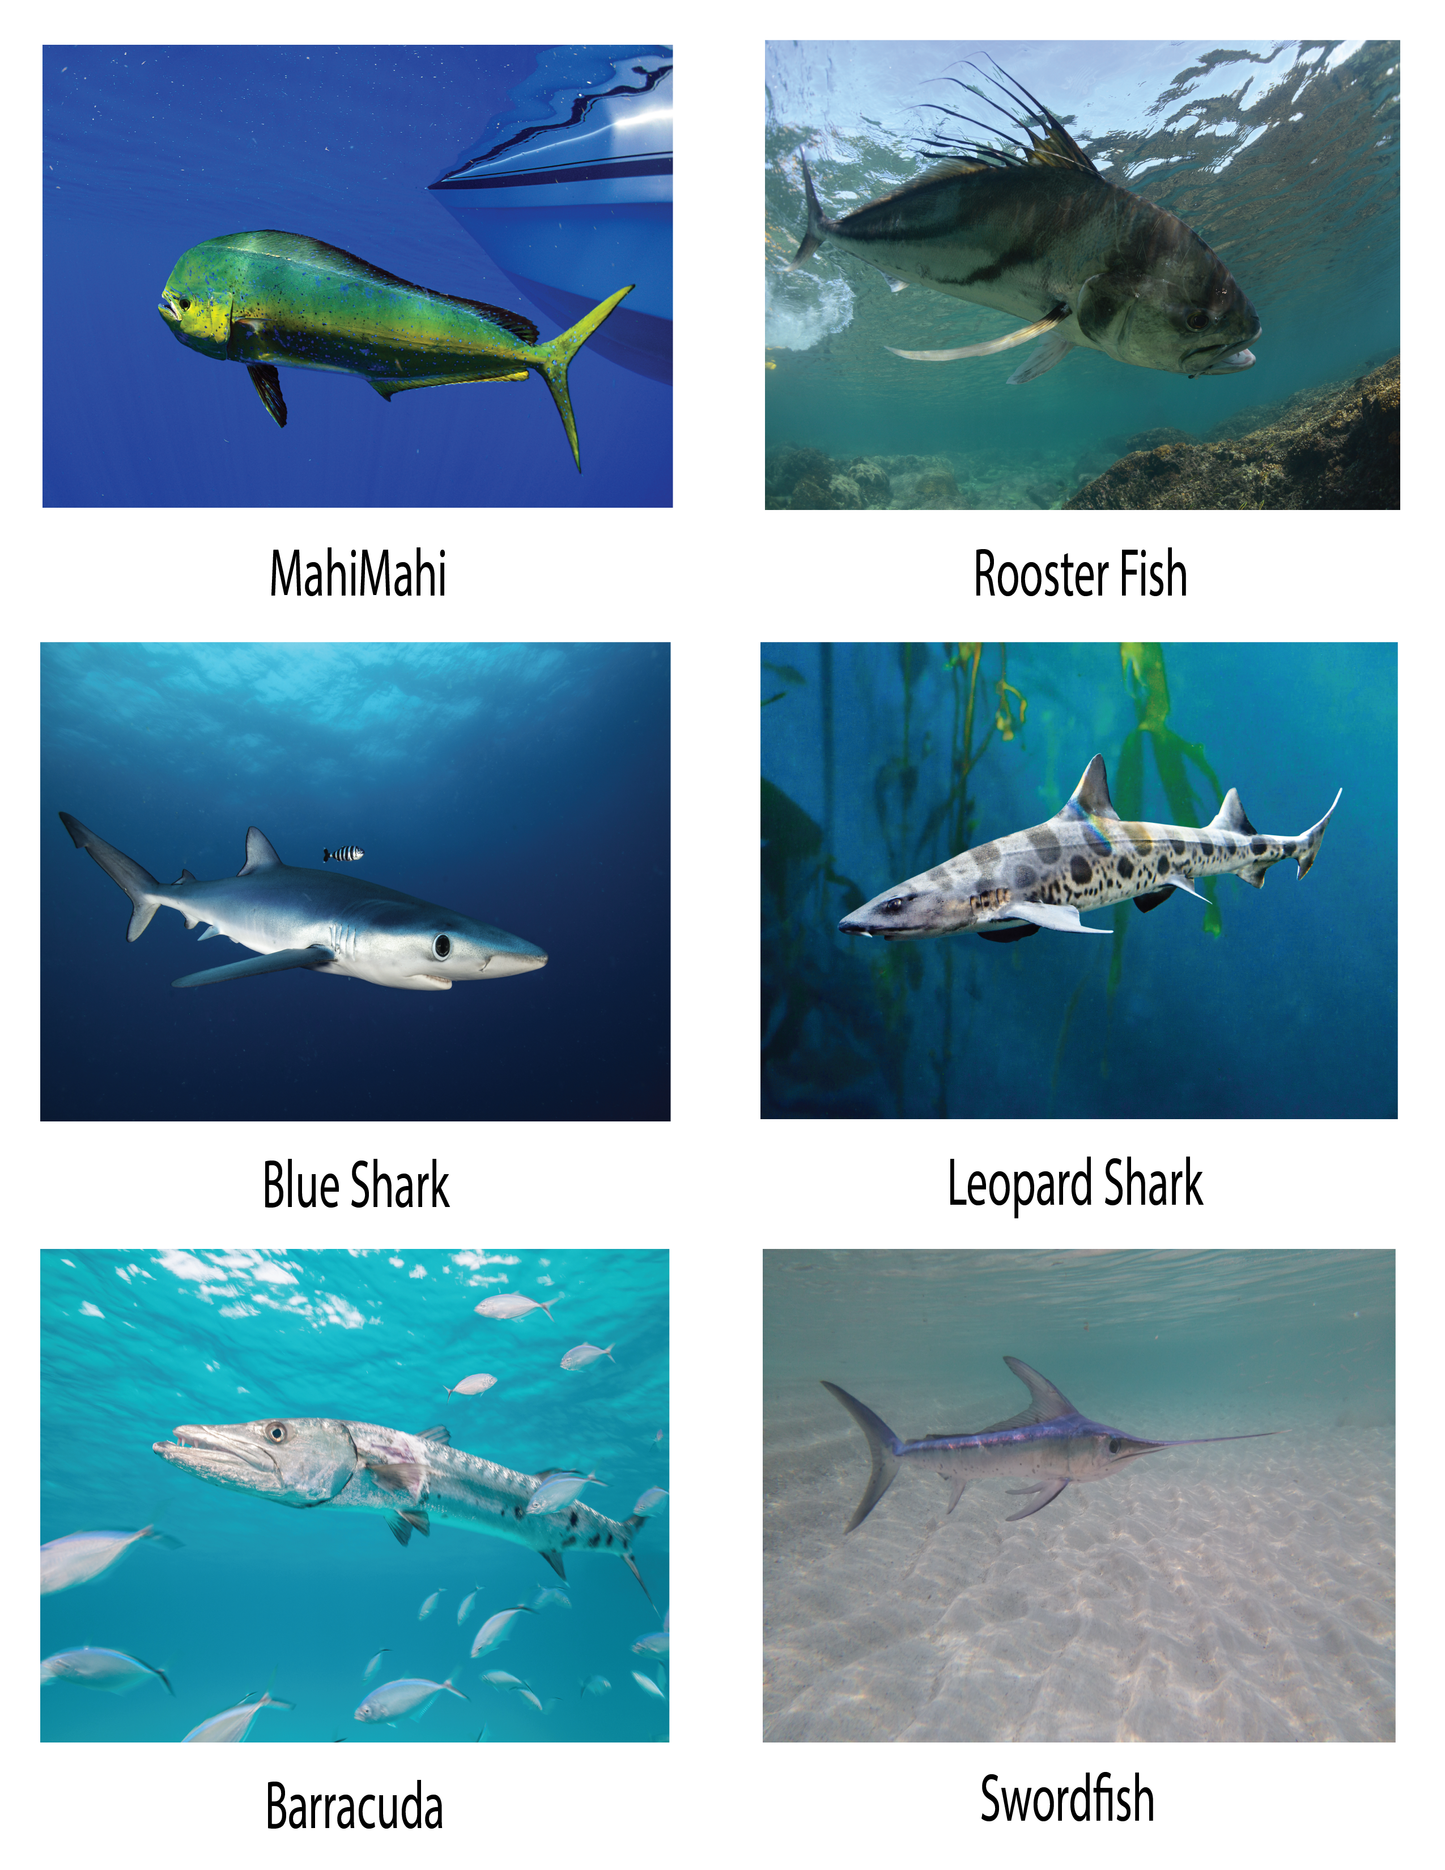 Libro educativo para colorear peces del Pacífico